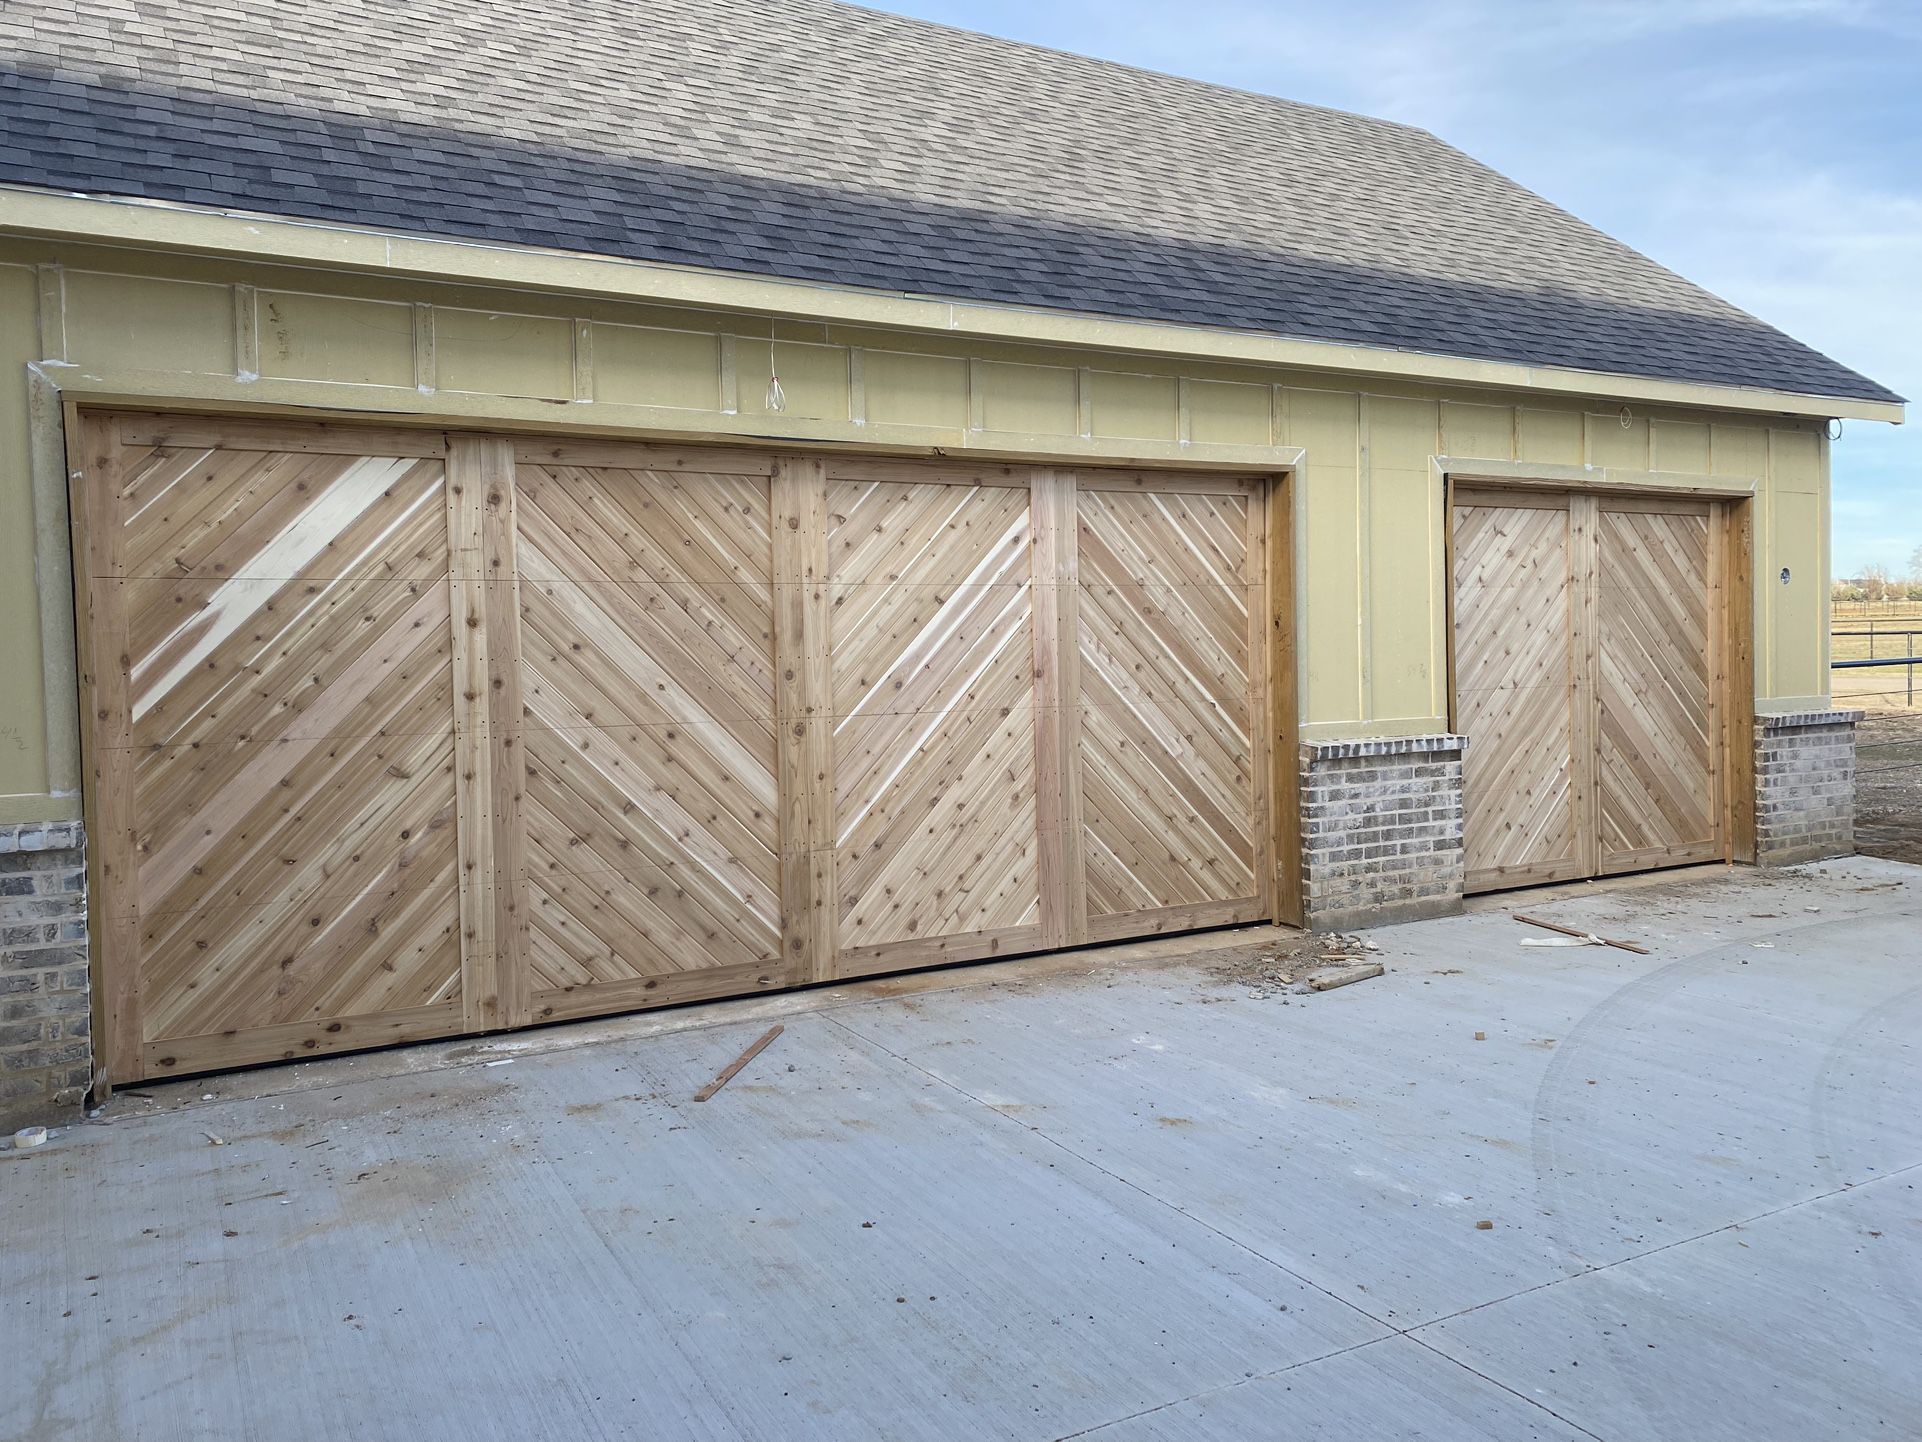 Custom Wooden Garage Doors